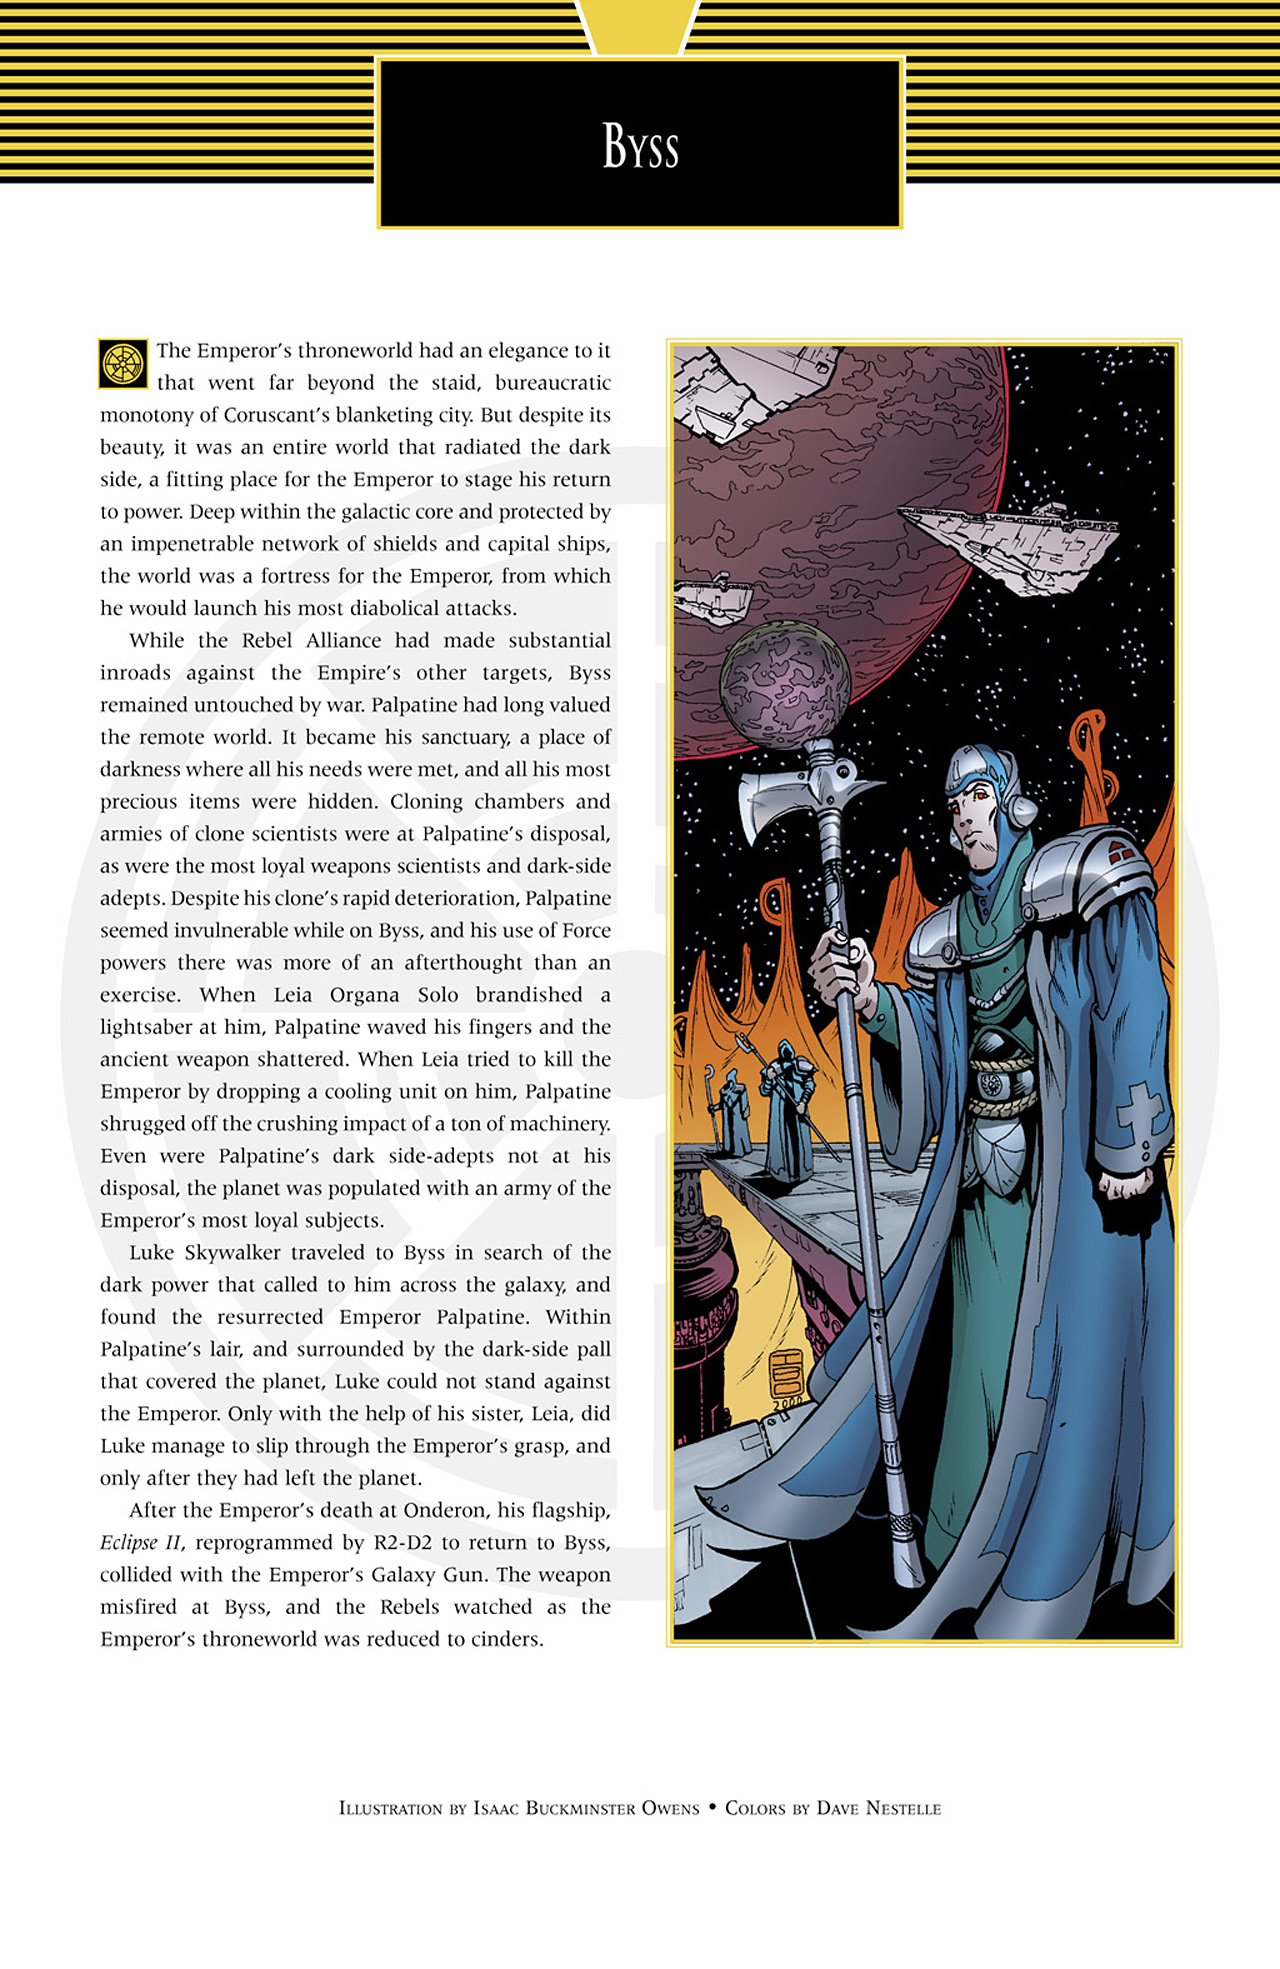 Read online Star Wars Handbook comic -  Issue #3 - 4